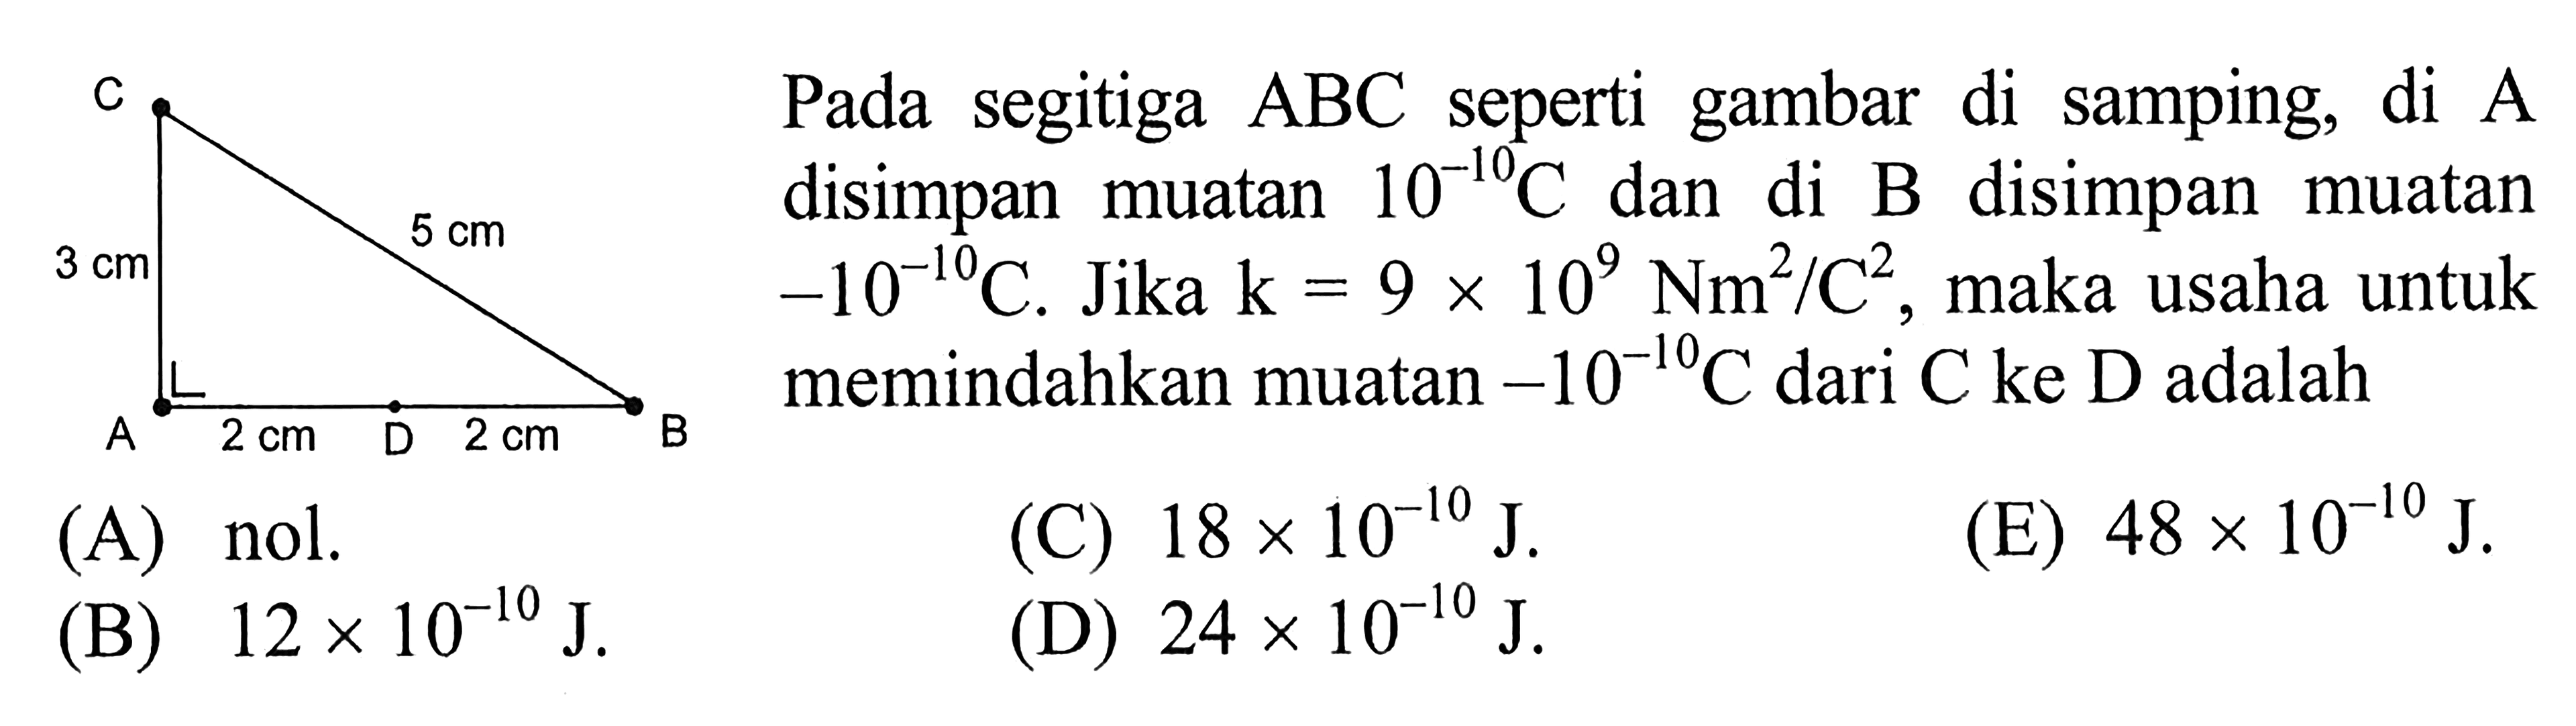 Pada segitiga ABC seperti gambar di samping, di A disimpan muatan 10^(-10)C dan di B disimpan muatan -10^(-10)C. Jika k = 9 x 10^9 Nm^2/C^2, maka usaha untuk memindahkan muatan -10^(-10)C dari C ke D adalah A 3 cm 5 cm A 2 cm D 2 cm B